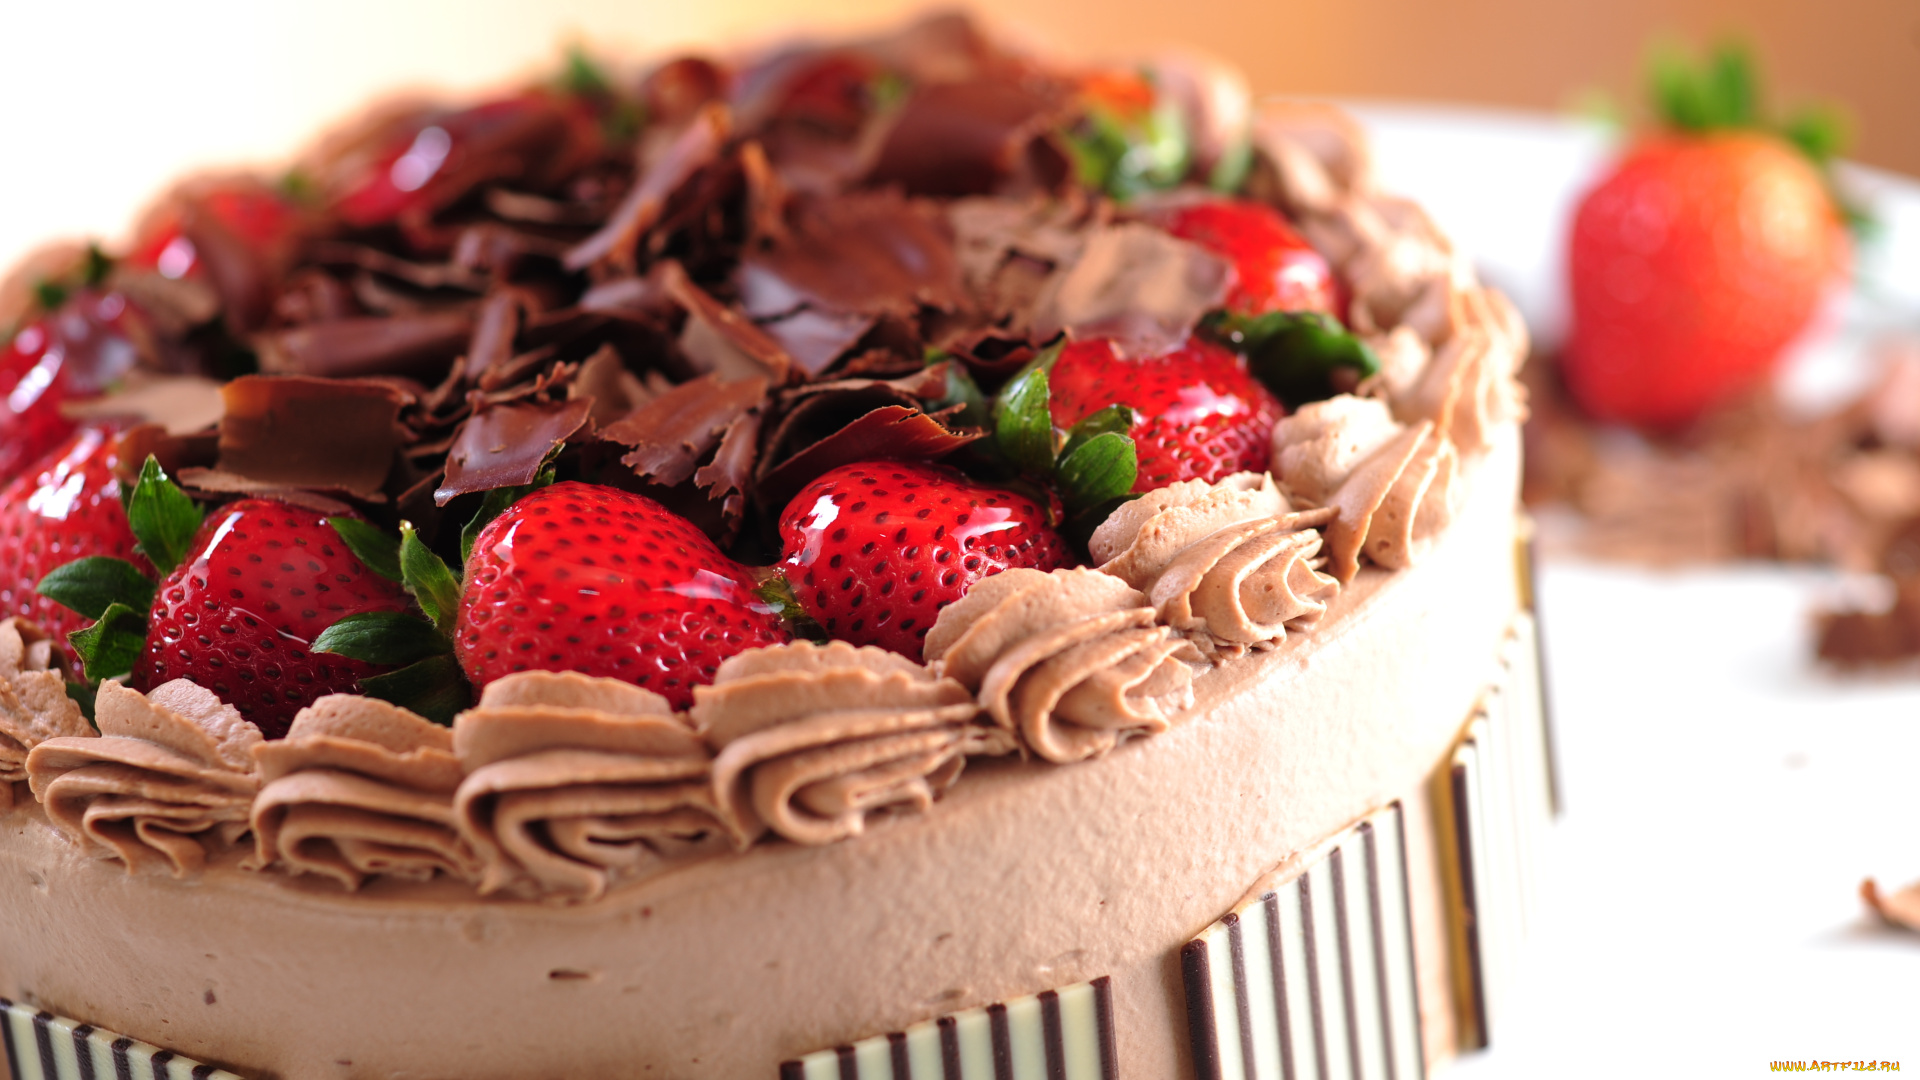 еда, торт, только, berries, strawberries, cake, десерт, dessert, food, cheesecake, чизкейк, крем, шоколад, chocolate, сладкое, пирожное, клубника, ягоды